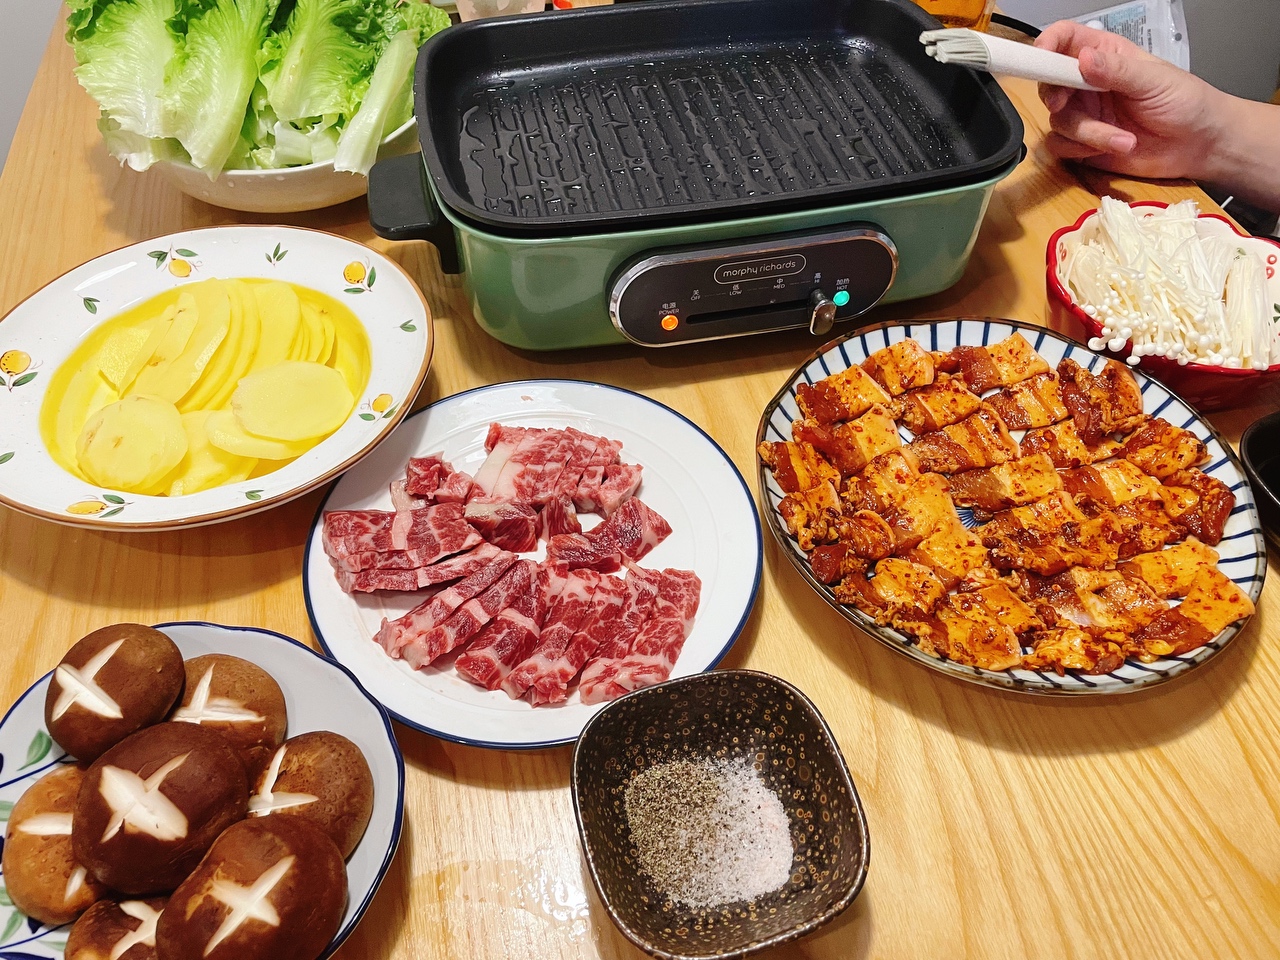 多功能锅食谱——家庭版烤肉的做法